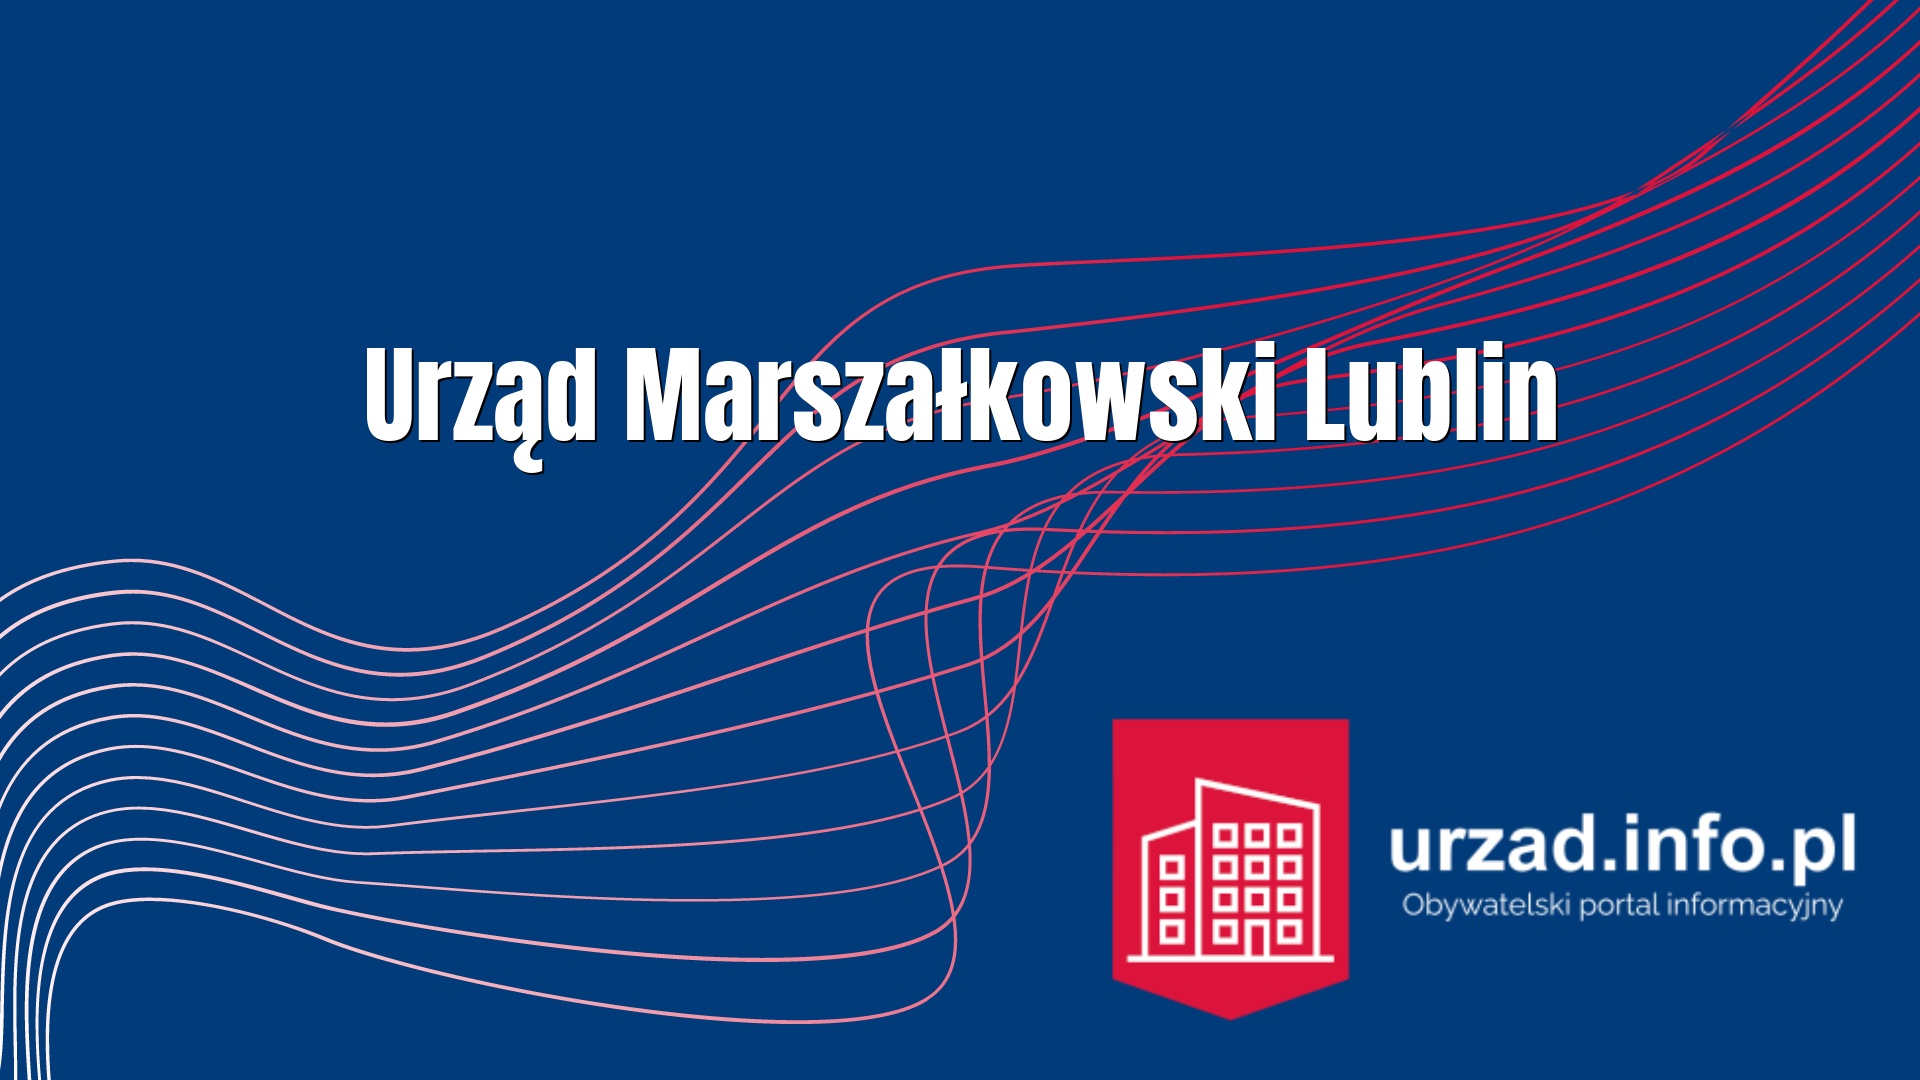 Urząd Marszałkowski Lublin